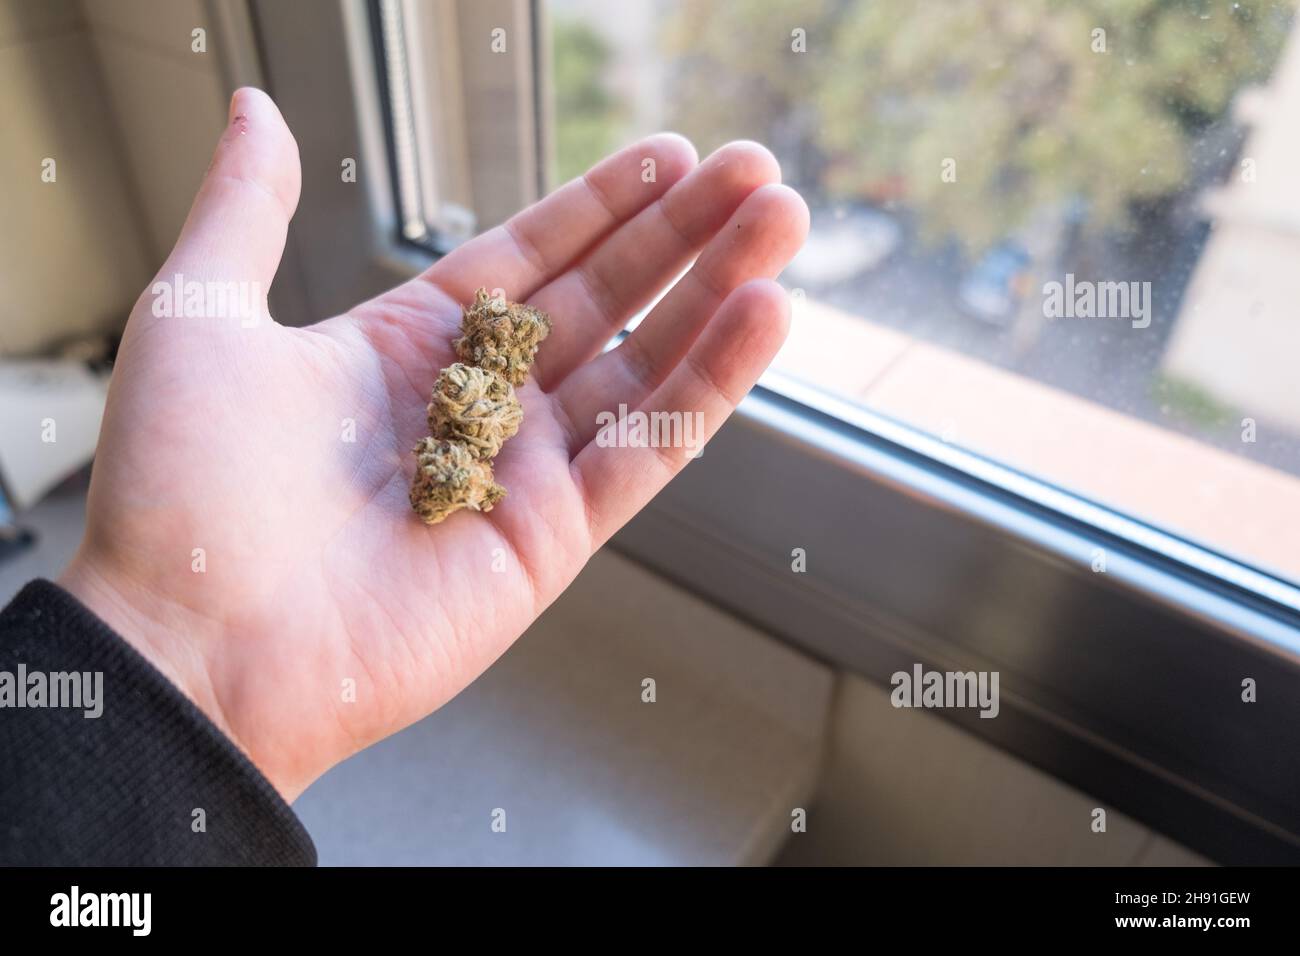 Mann, der Cannabisknospen in der Hand hält. Marihuana für den Freizeit- oder medizinischen Gebrauch. Speicherplatz kopieren. Stockfoto